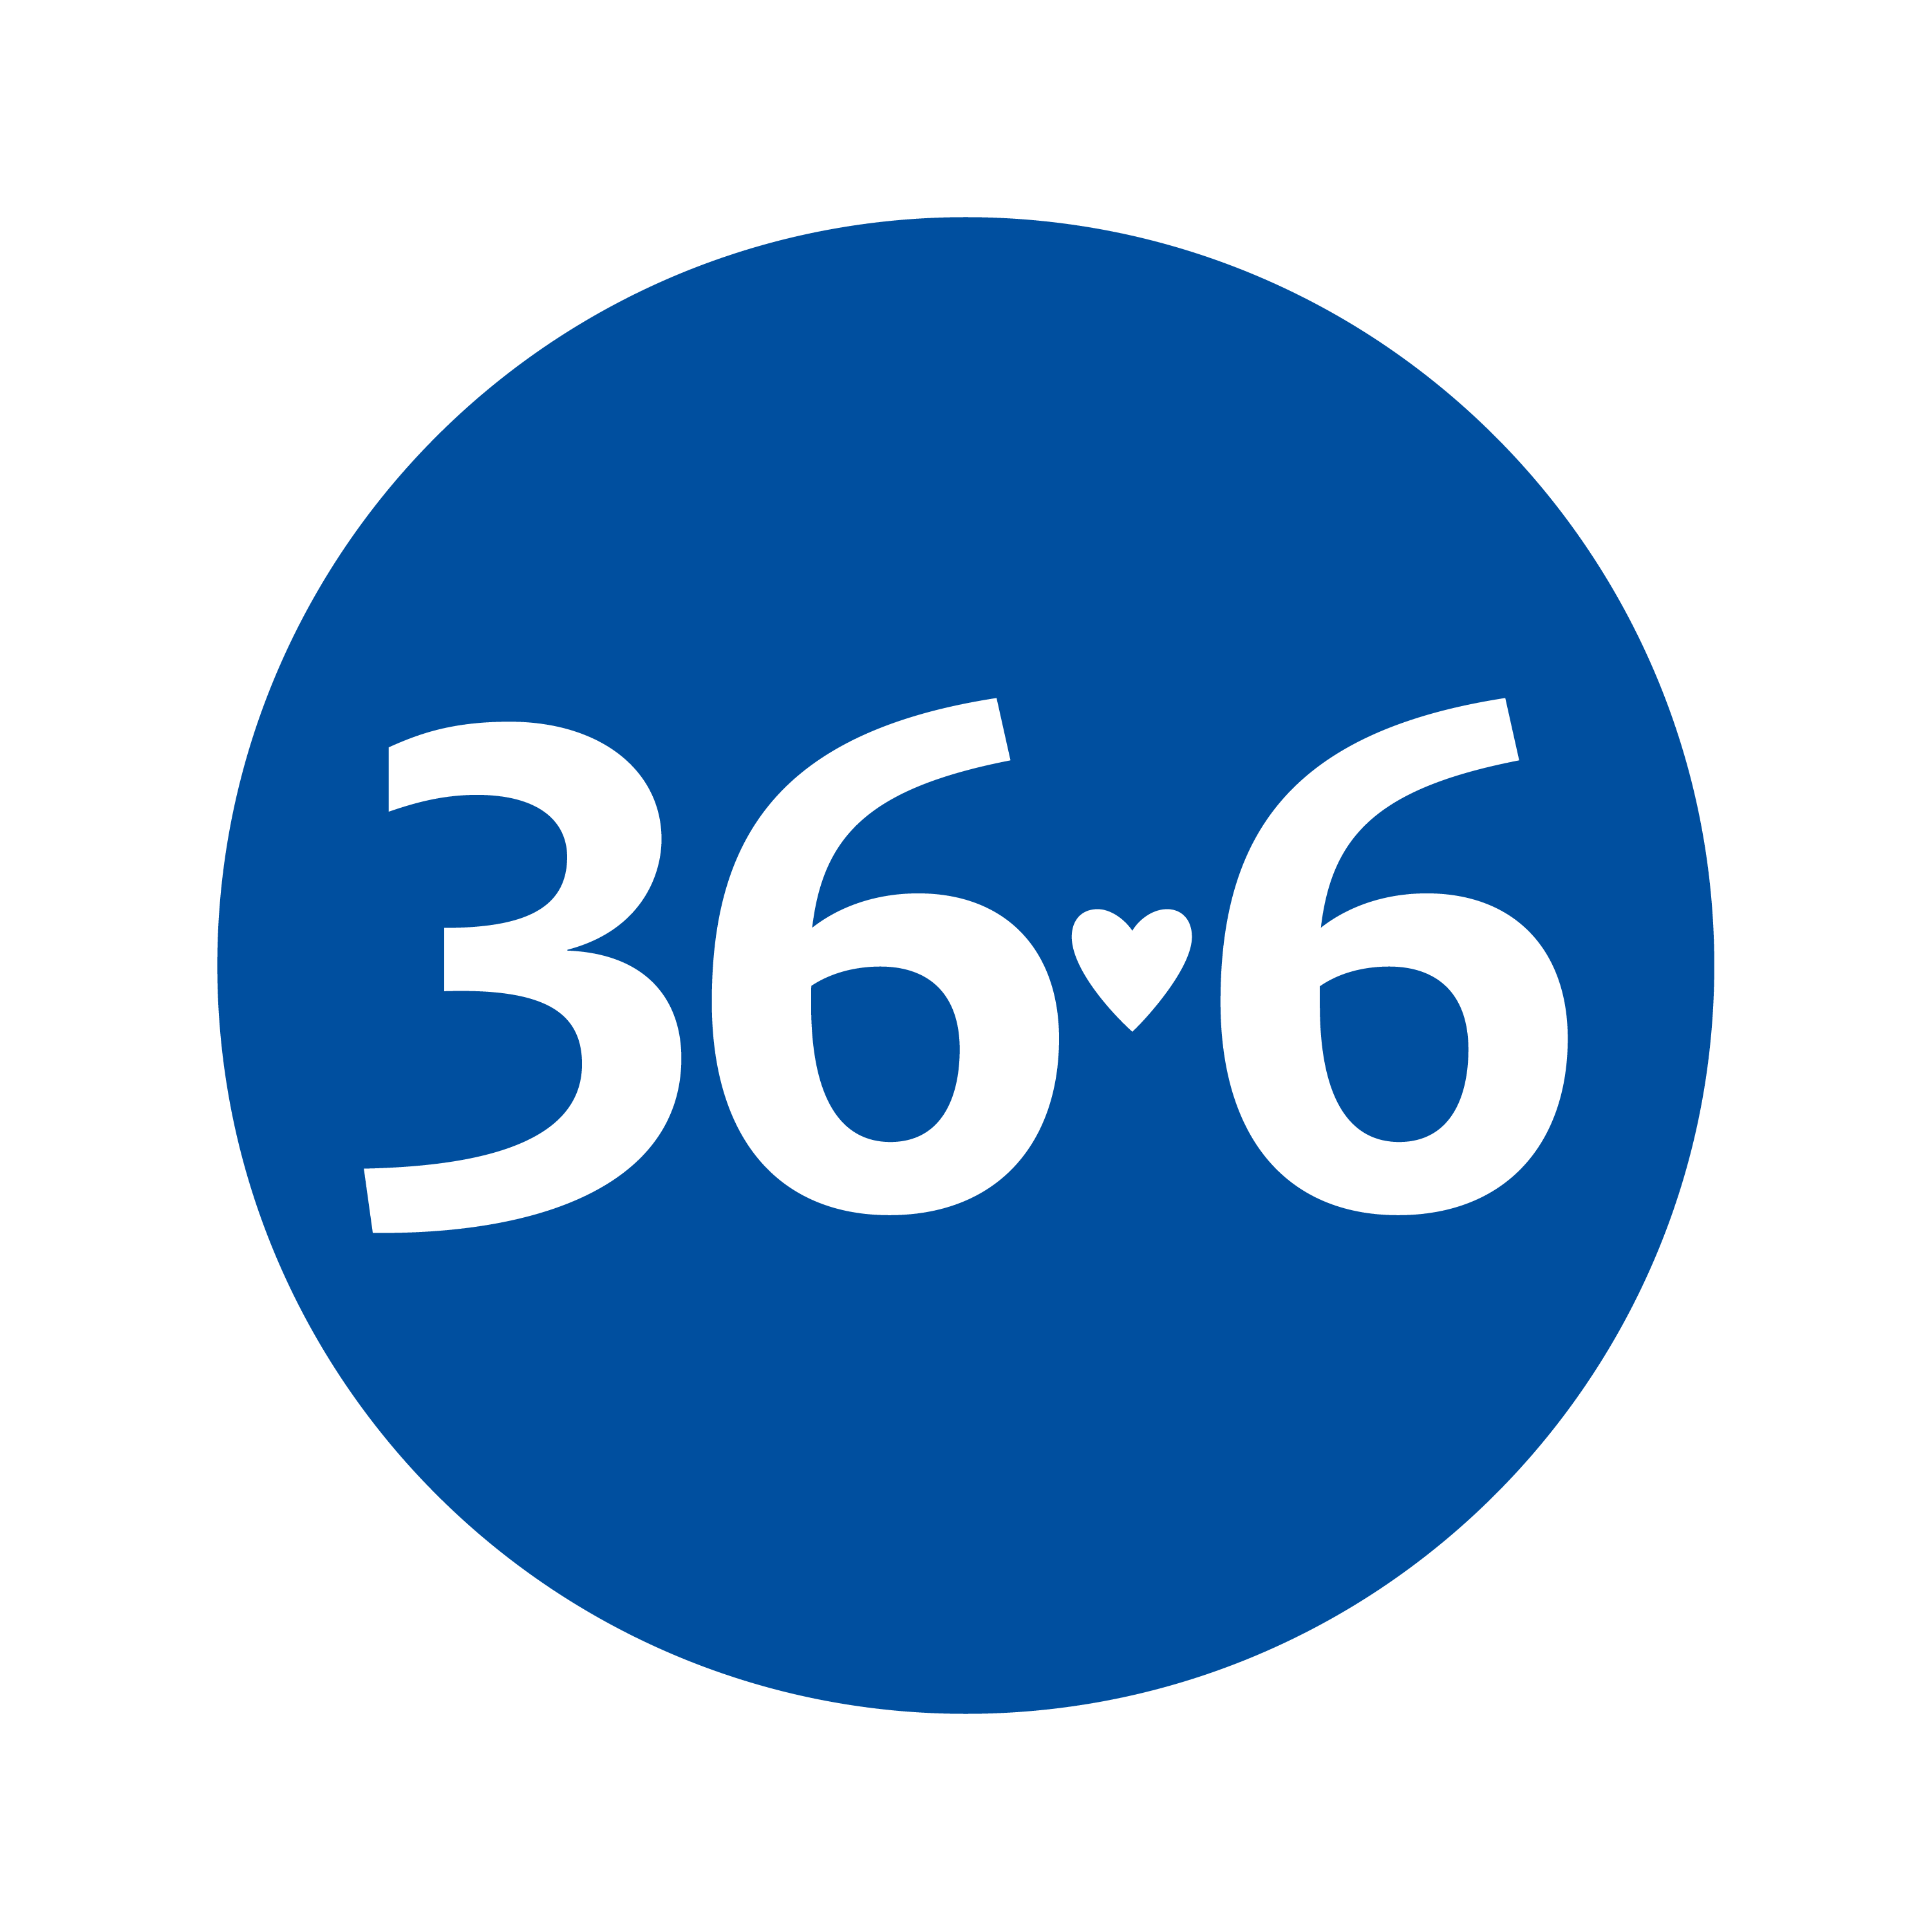 Лого 36.6